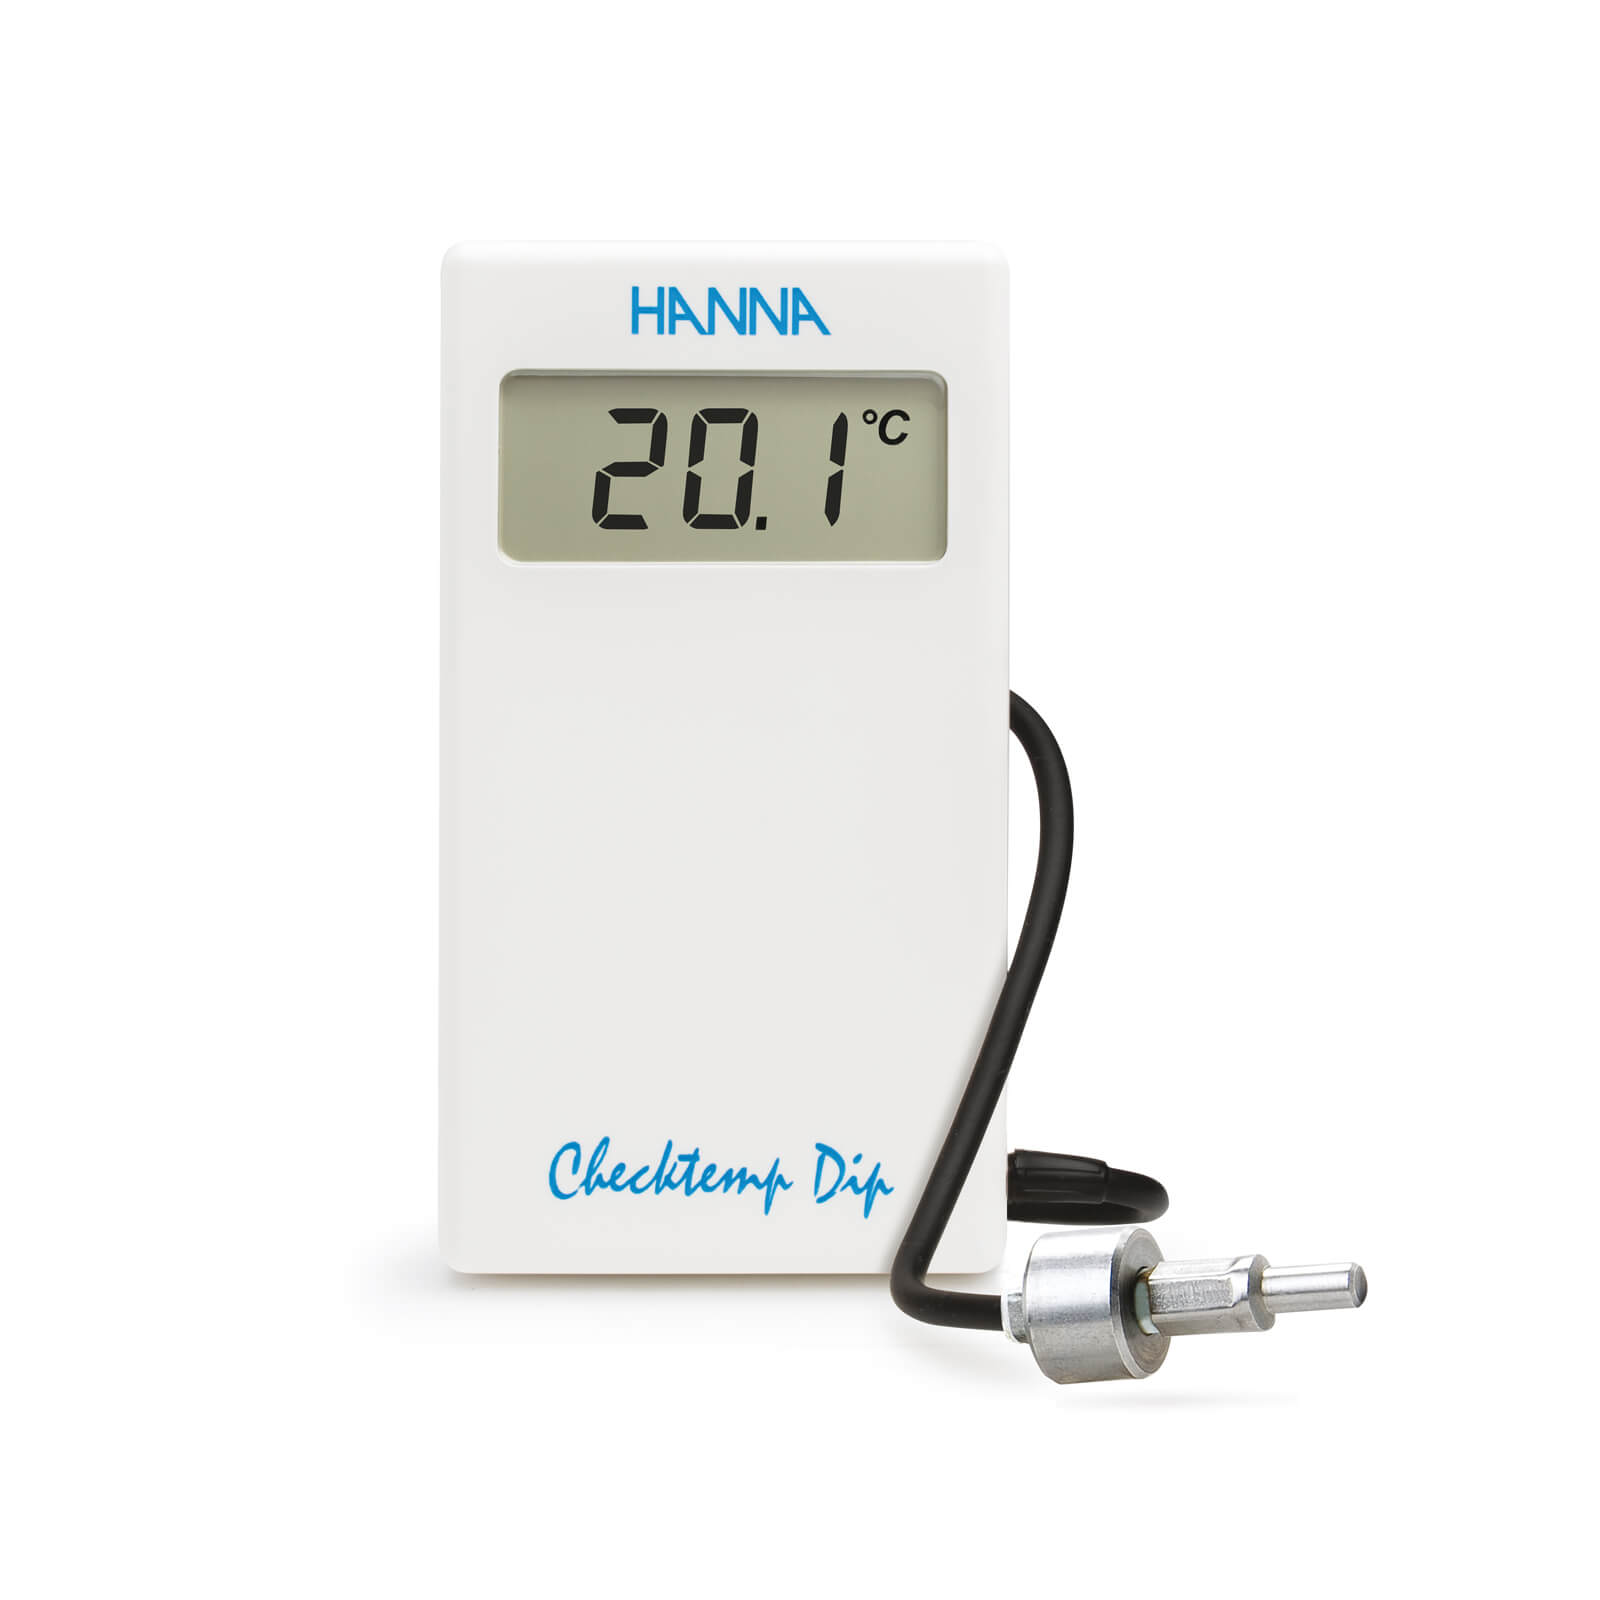 Thermomètre compact avec sonde lestée Checktemp® Dip, câble 3 m